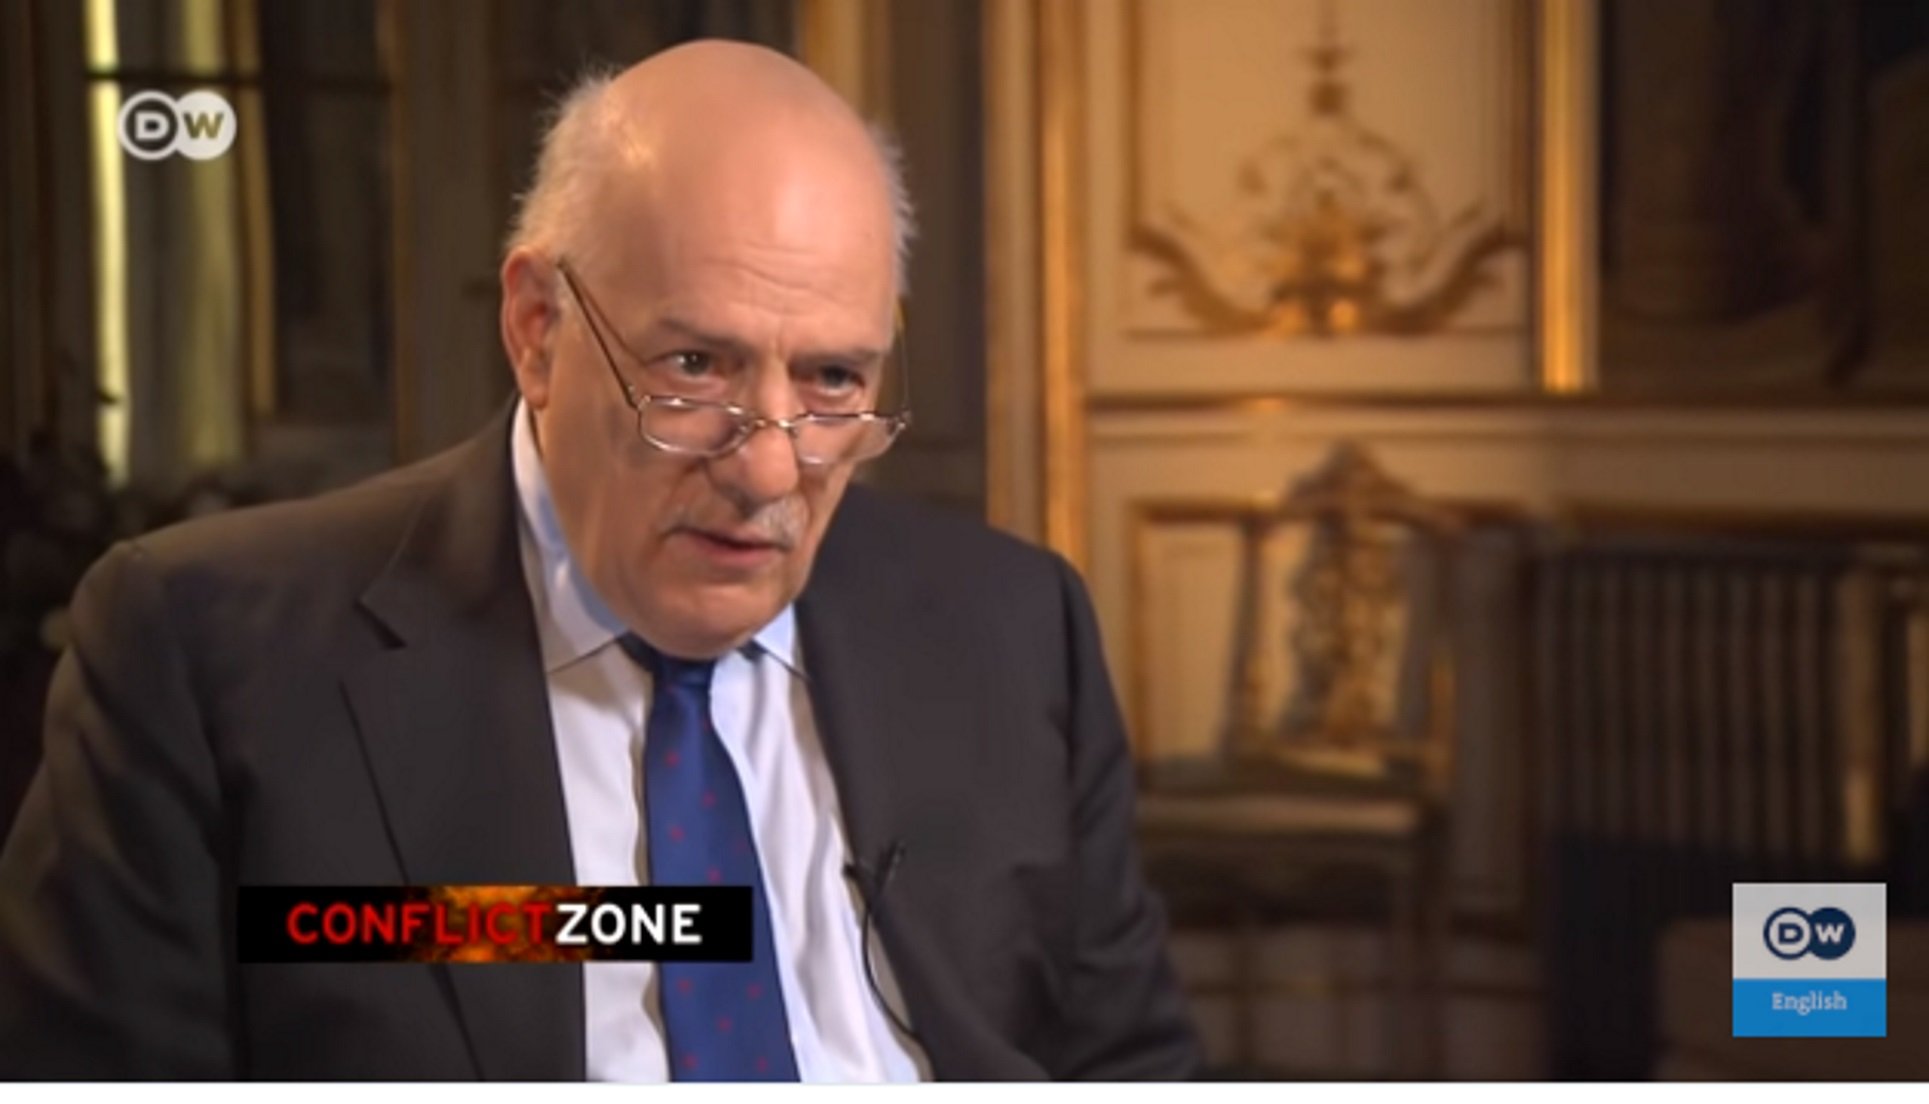 El programa de la TV alemana que irritó a Borrell quiere entrevistar a Puigdemont